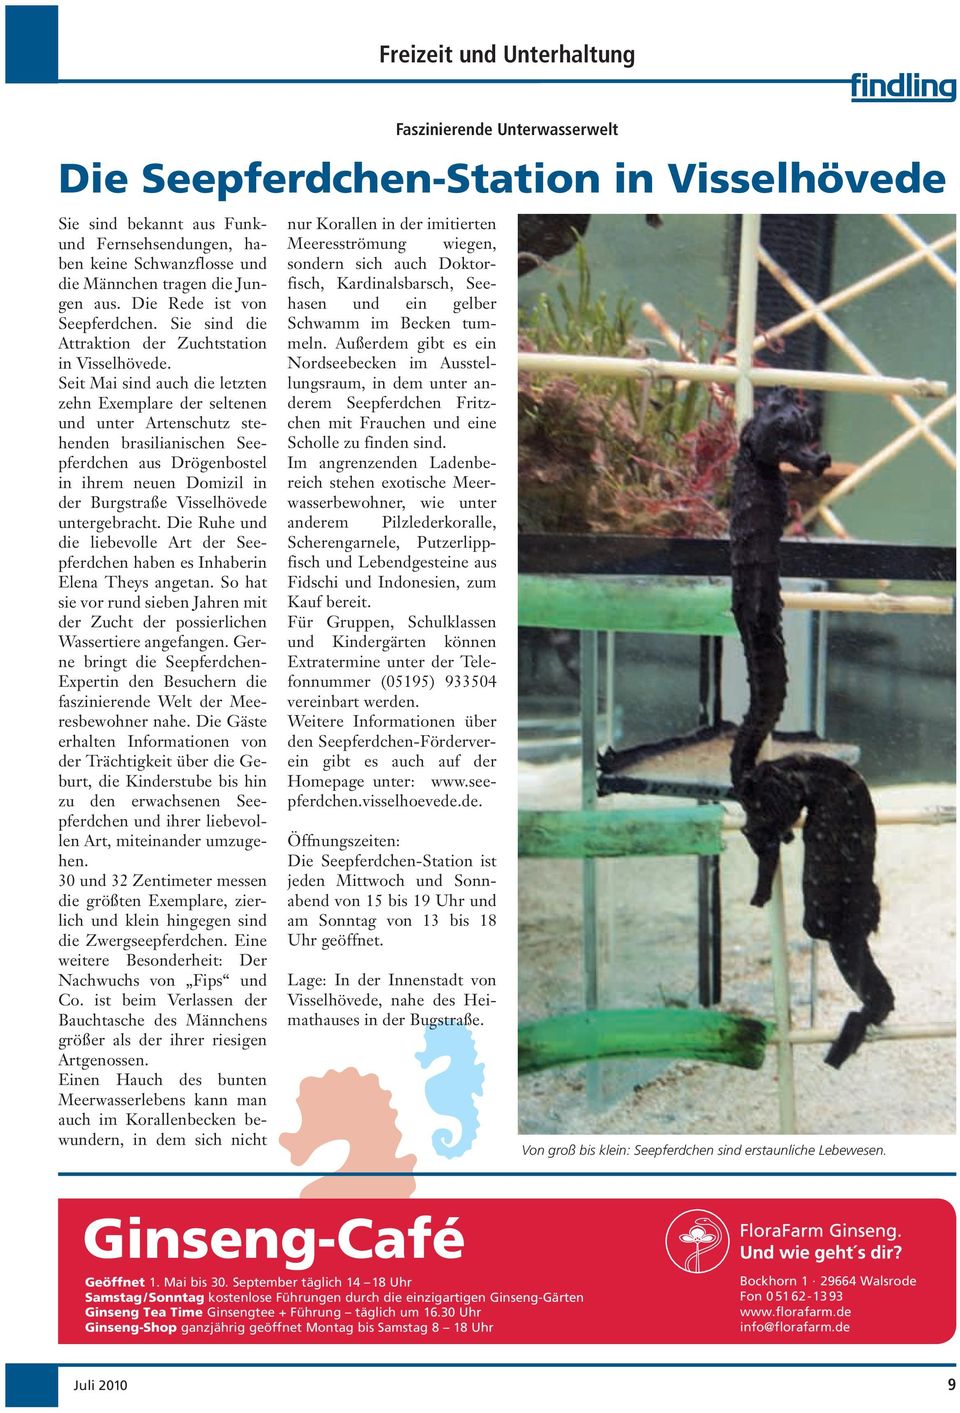 Seit Mai sind auch die letzten zehn Exemplare der seltenen und unter Artenschutz stehenden brasilianischen Seepferdchen aus Drögenbostel in ihrem neuen Domizil in der Burgstraße Visselhövede